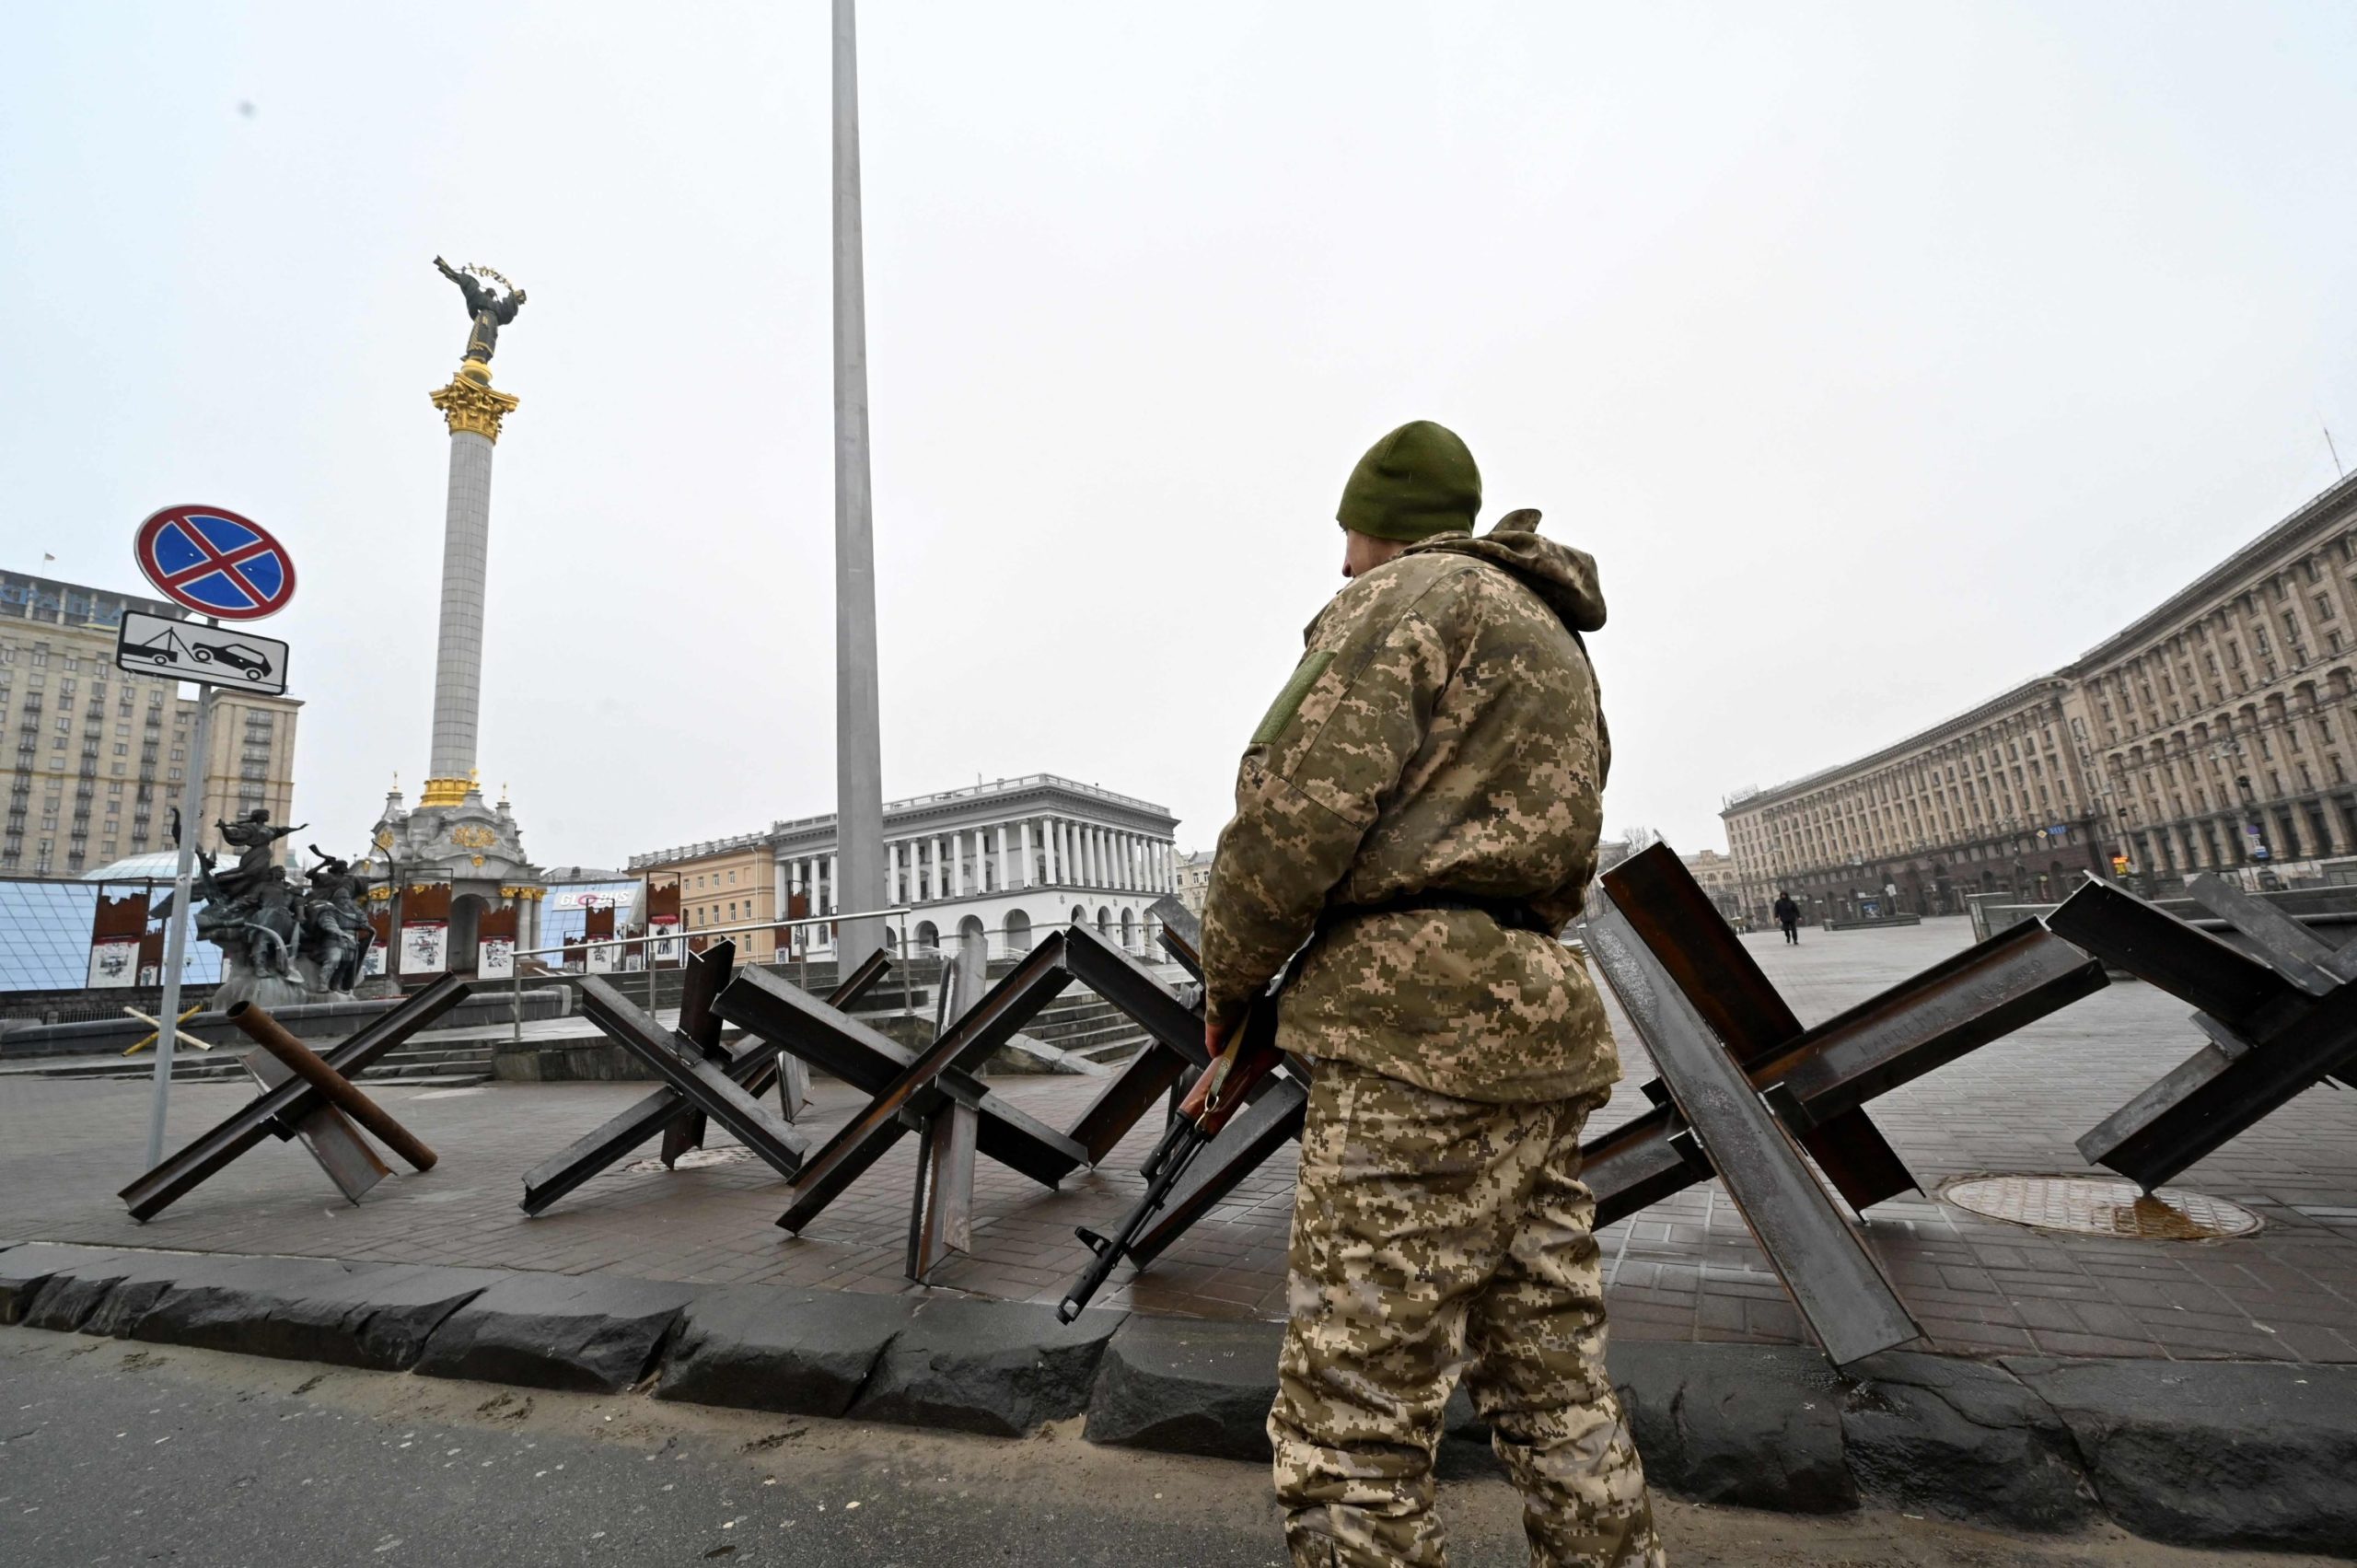 Πόλεμος στην Ουκρανία: Ρωσικά στρατεύματα προετοιμάζονται για επιθέσεις στο Κίεβο – Νέος κύκλος διαπραγματεύσεων Ρωσίας – Ουκρανίας